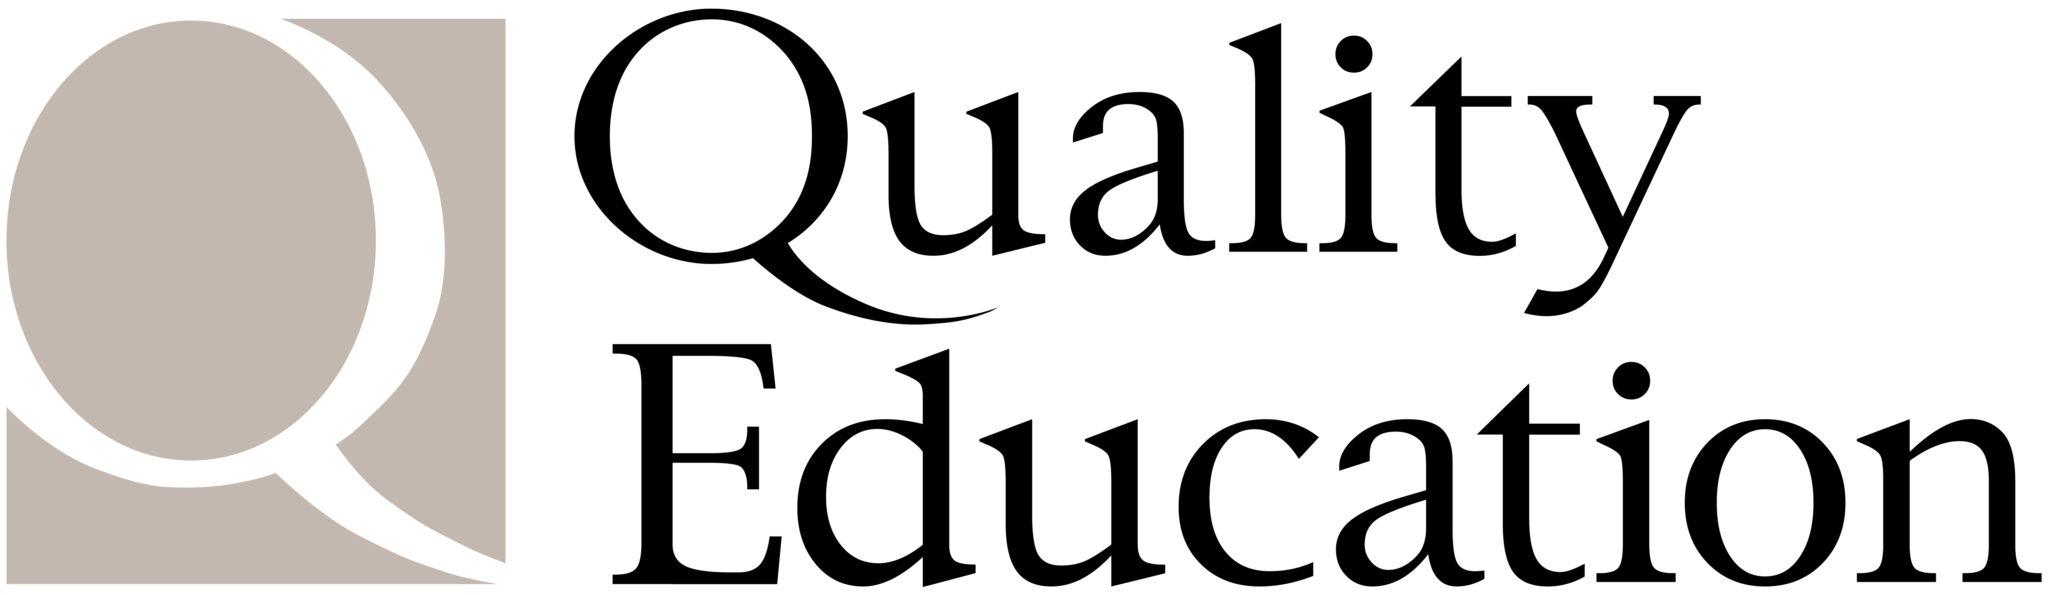 Quality english. Quality English лого. Quality Education. England quality logo.